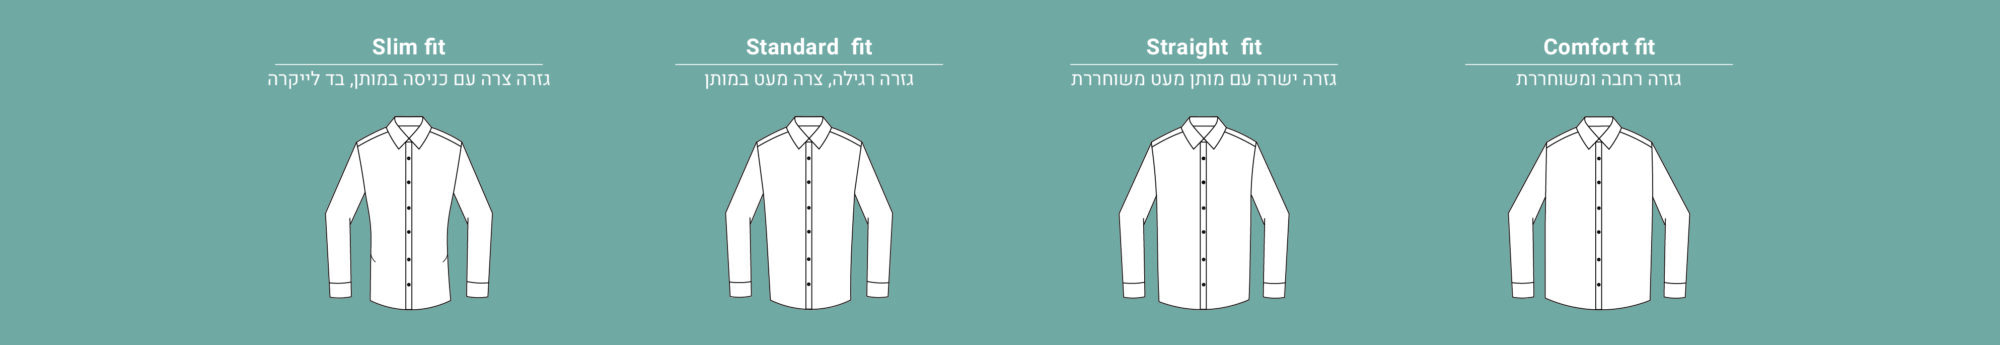 men_shirts_pattern-01-1.jpg